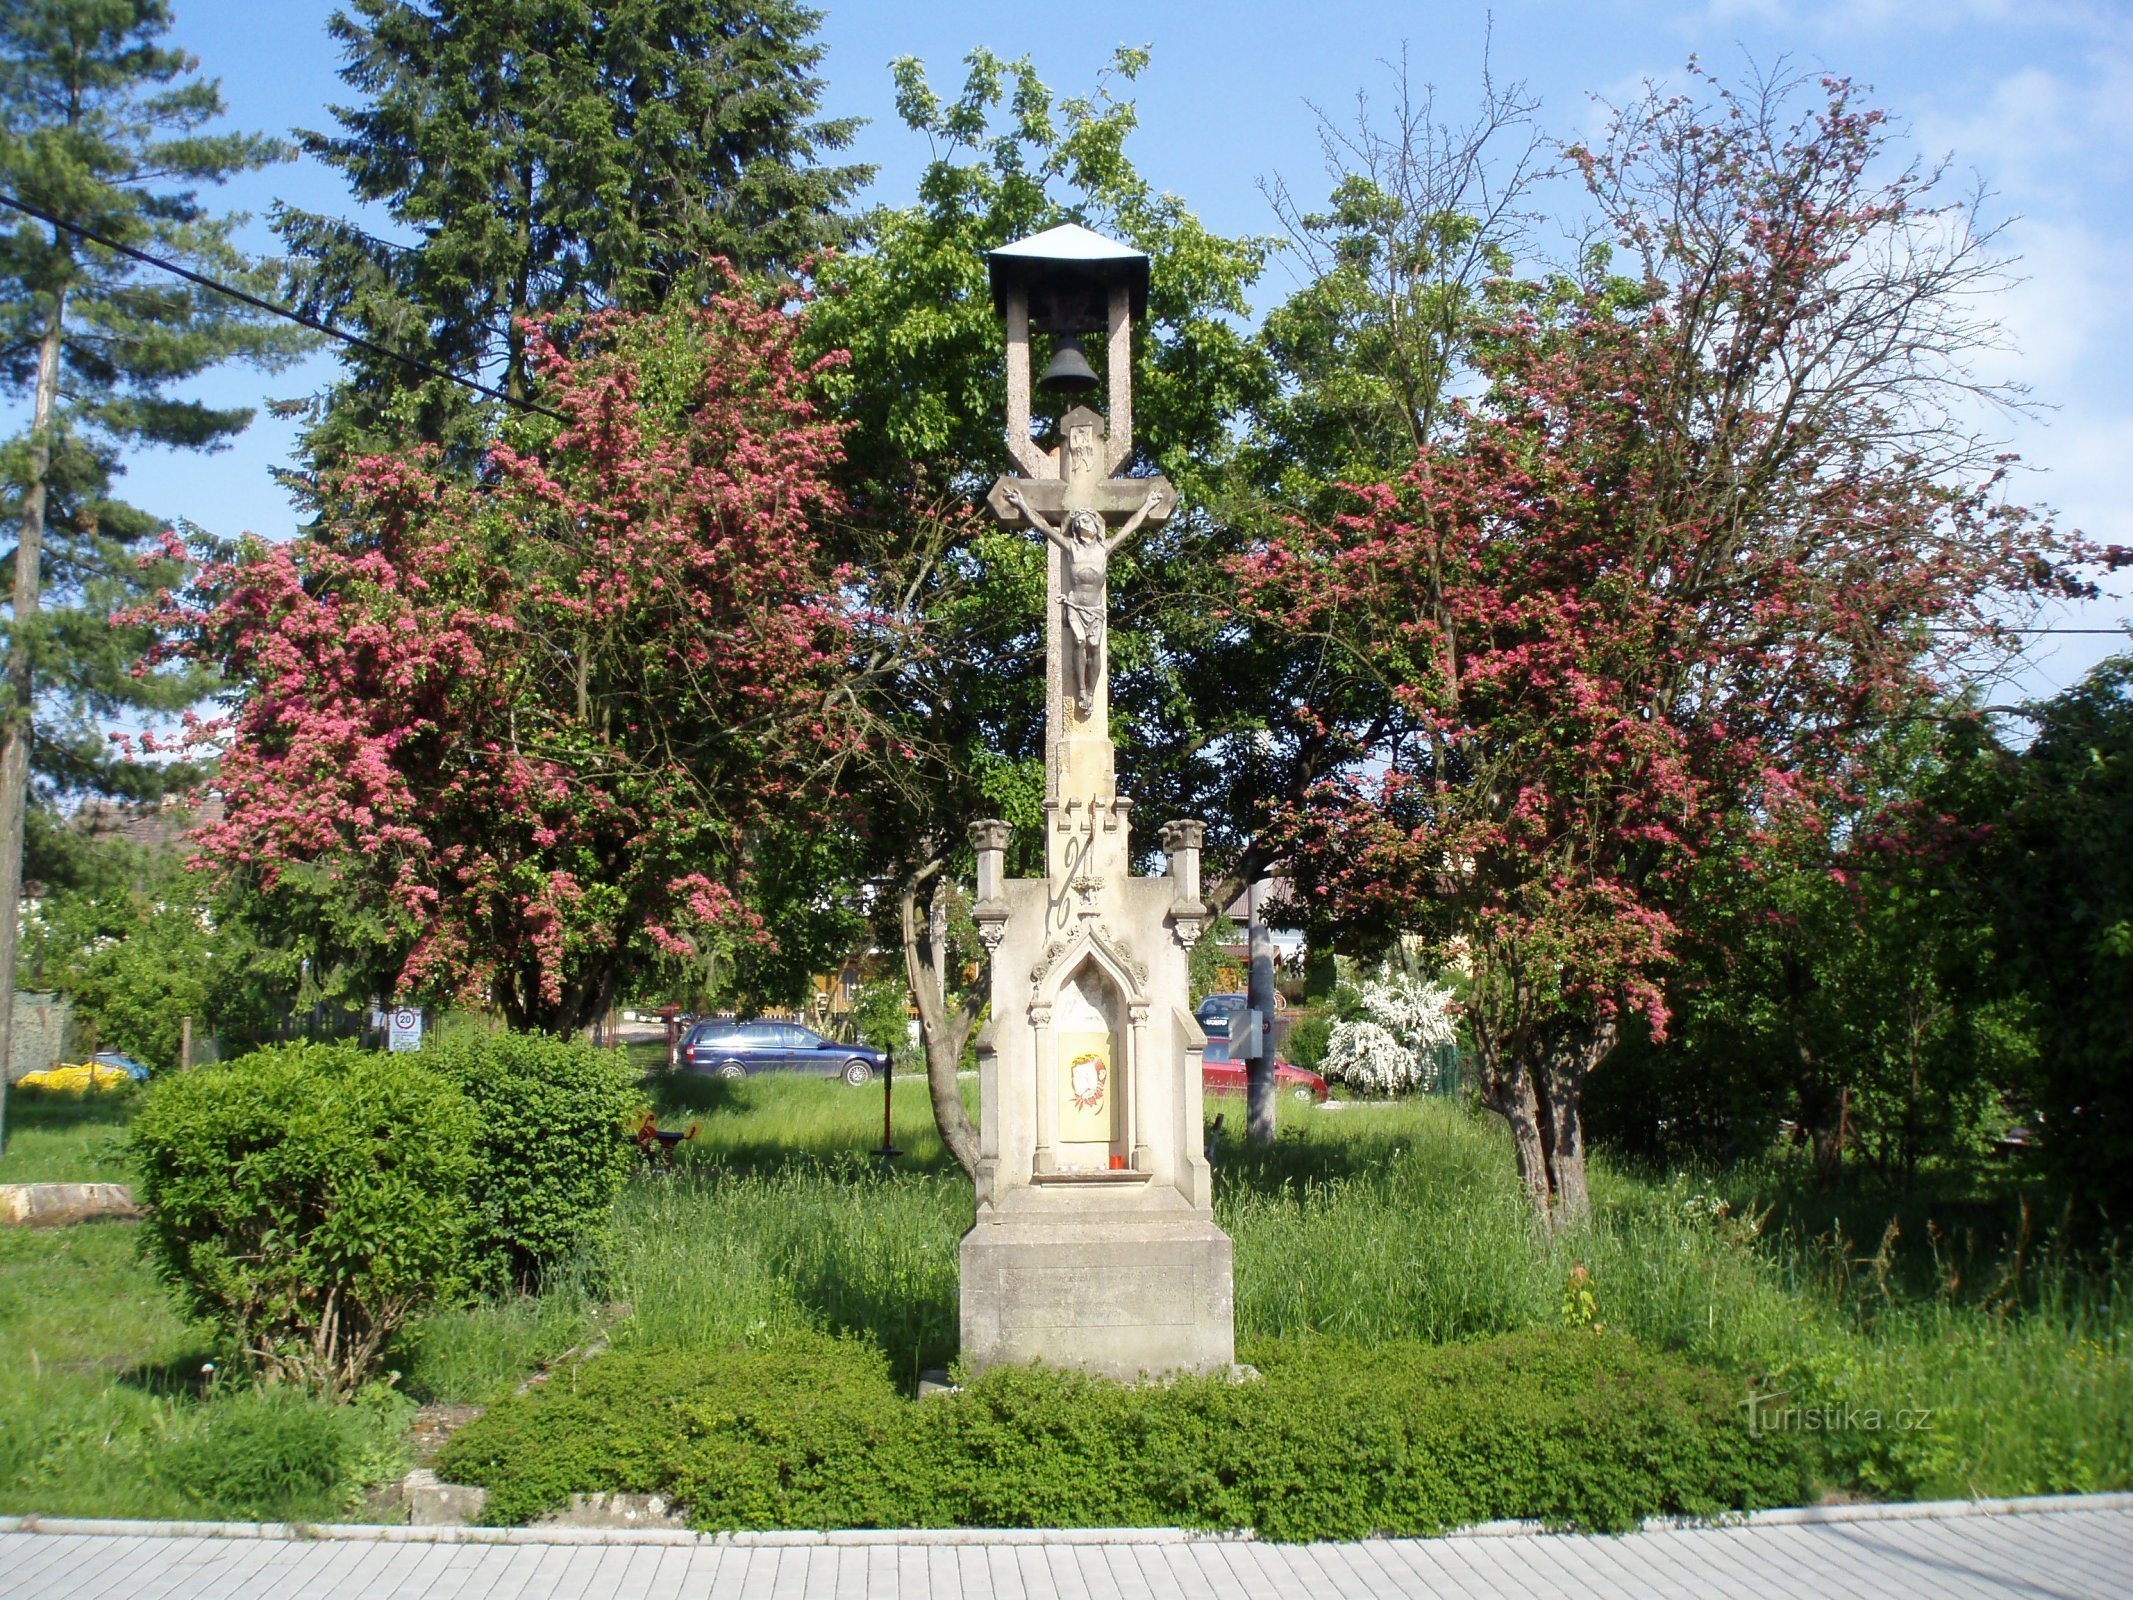 Дзвіниця з кам'яним хрестом у Руднічці (Градец Кралове, 25.5.2010)